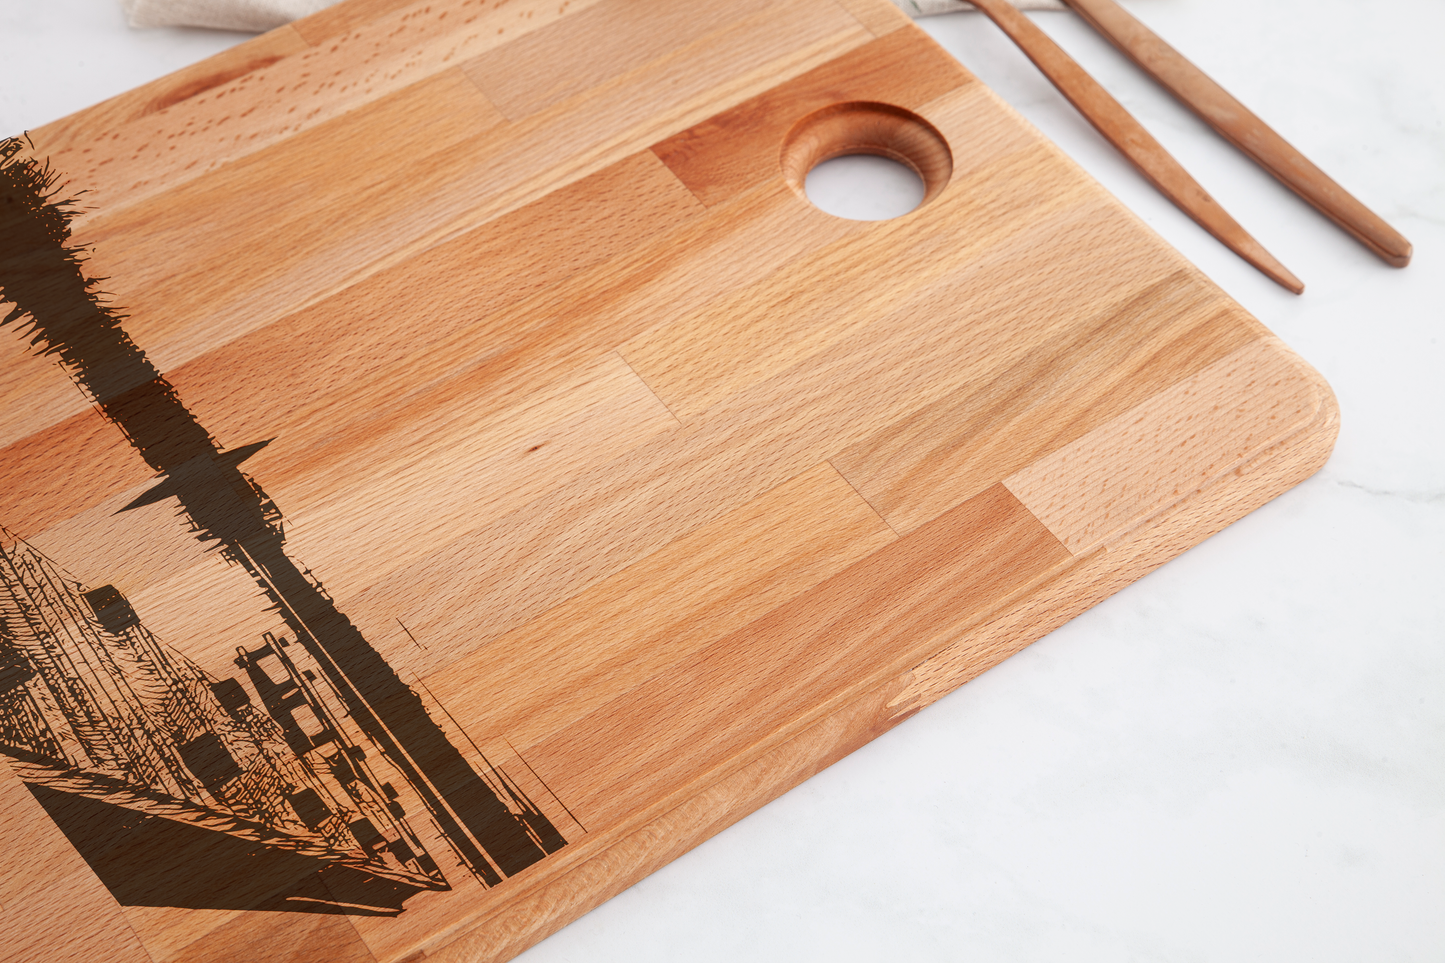 Amstelveen, De Poel, cutting board, wood grain